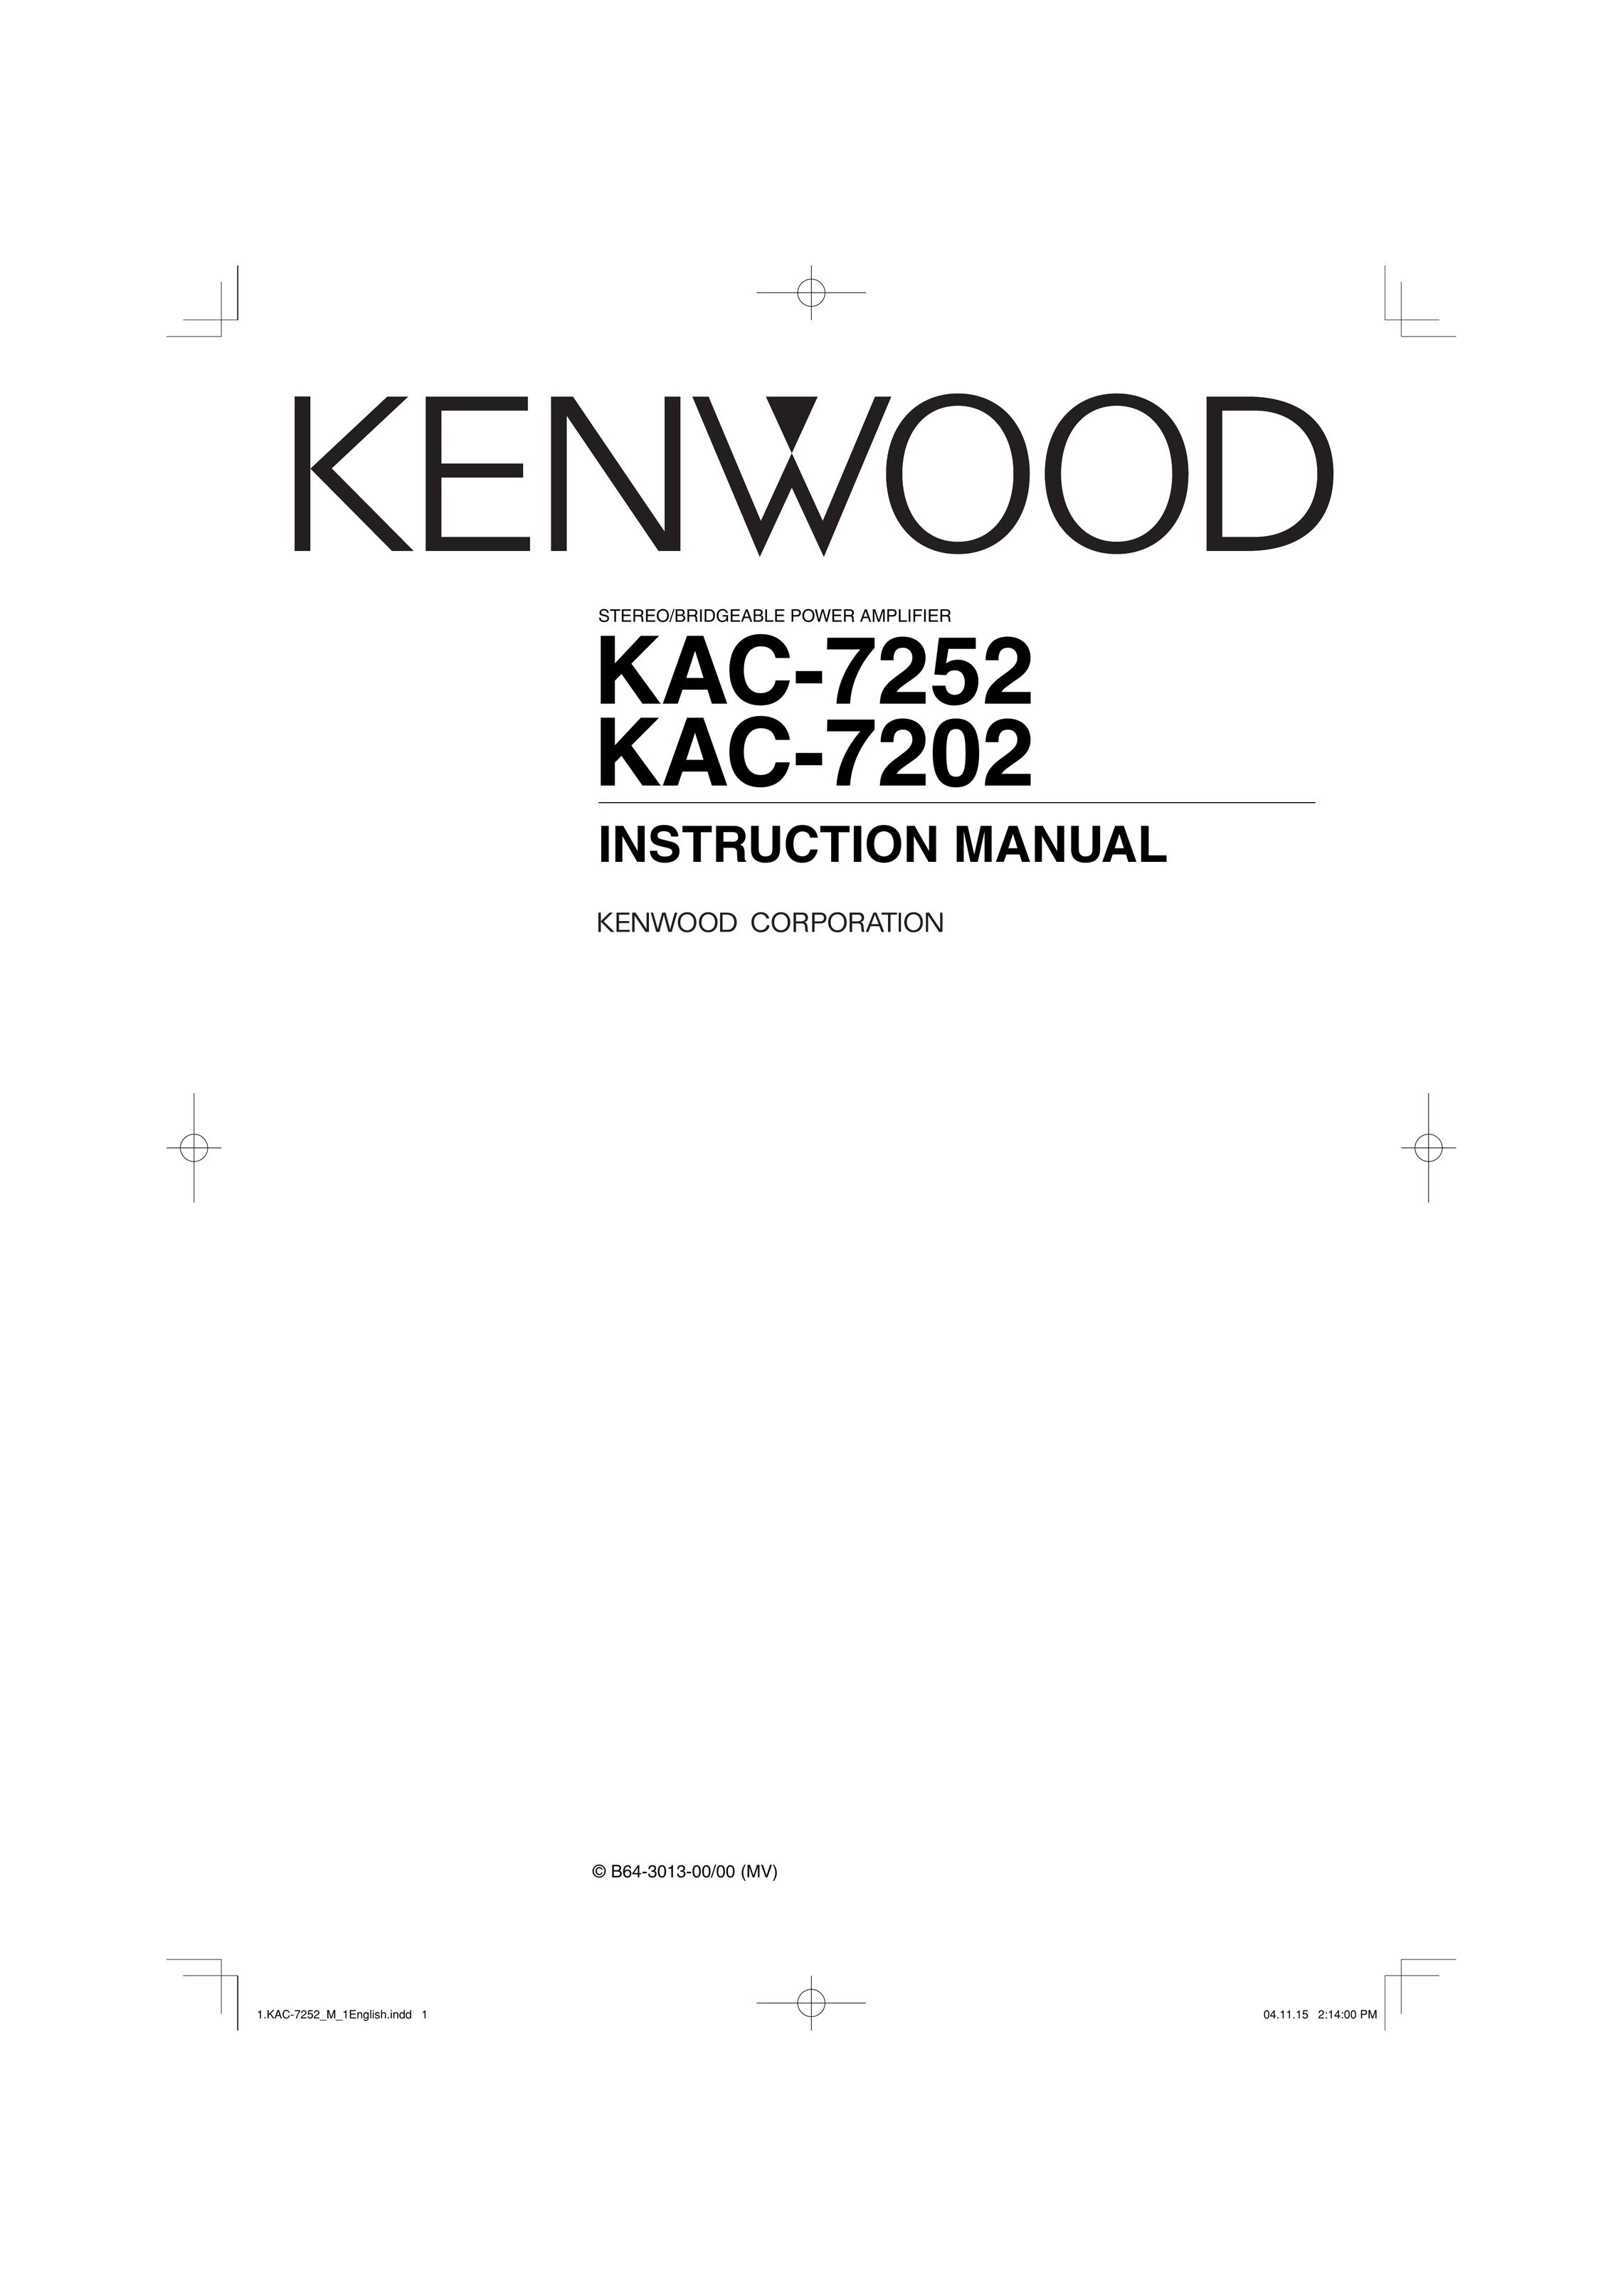 Kenwood KAC-7202 Stereo Amplifier User Manual